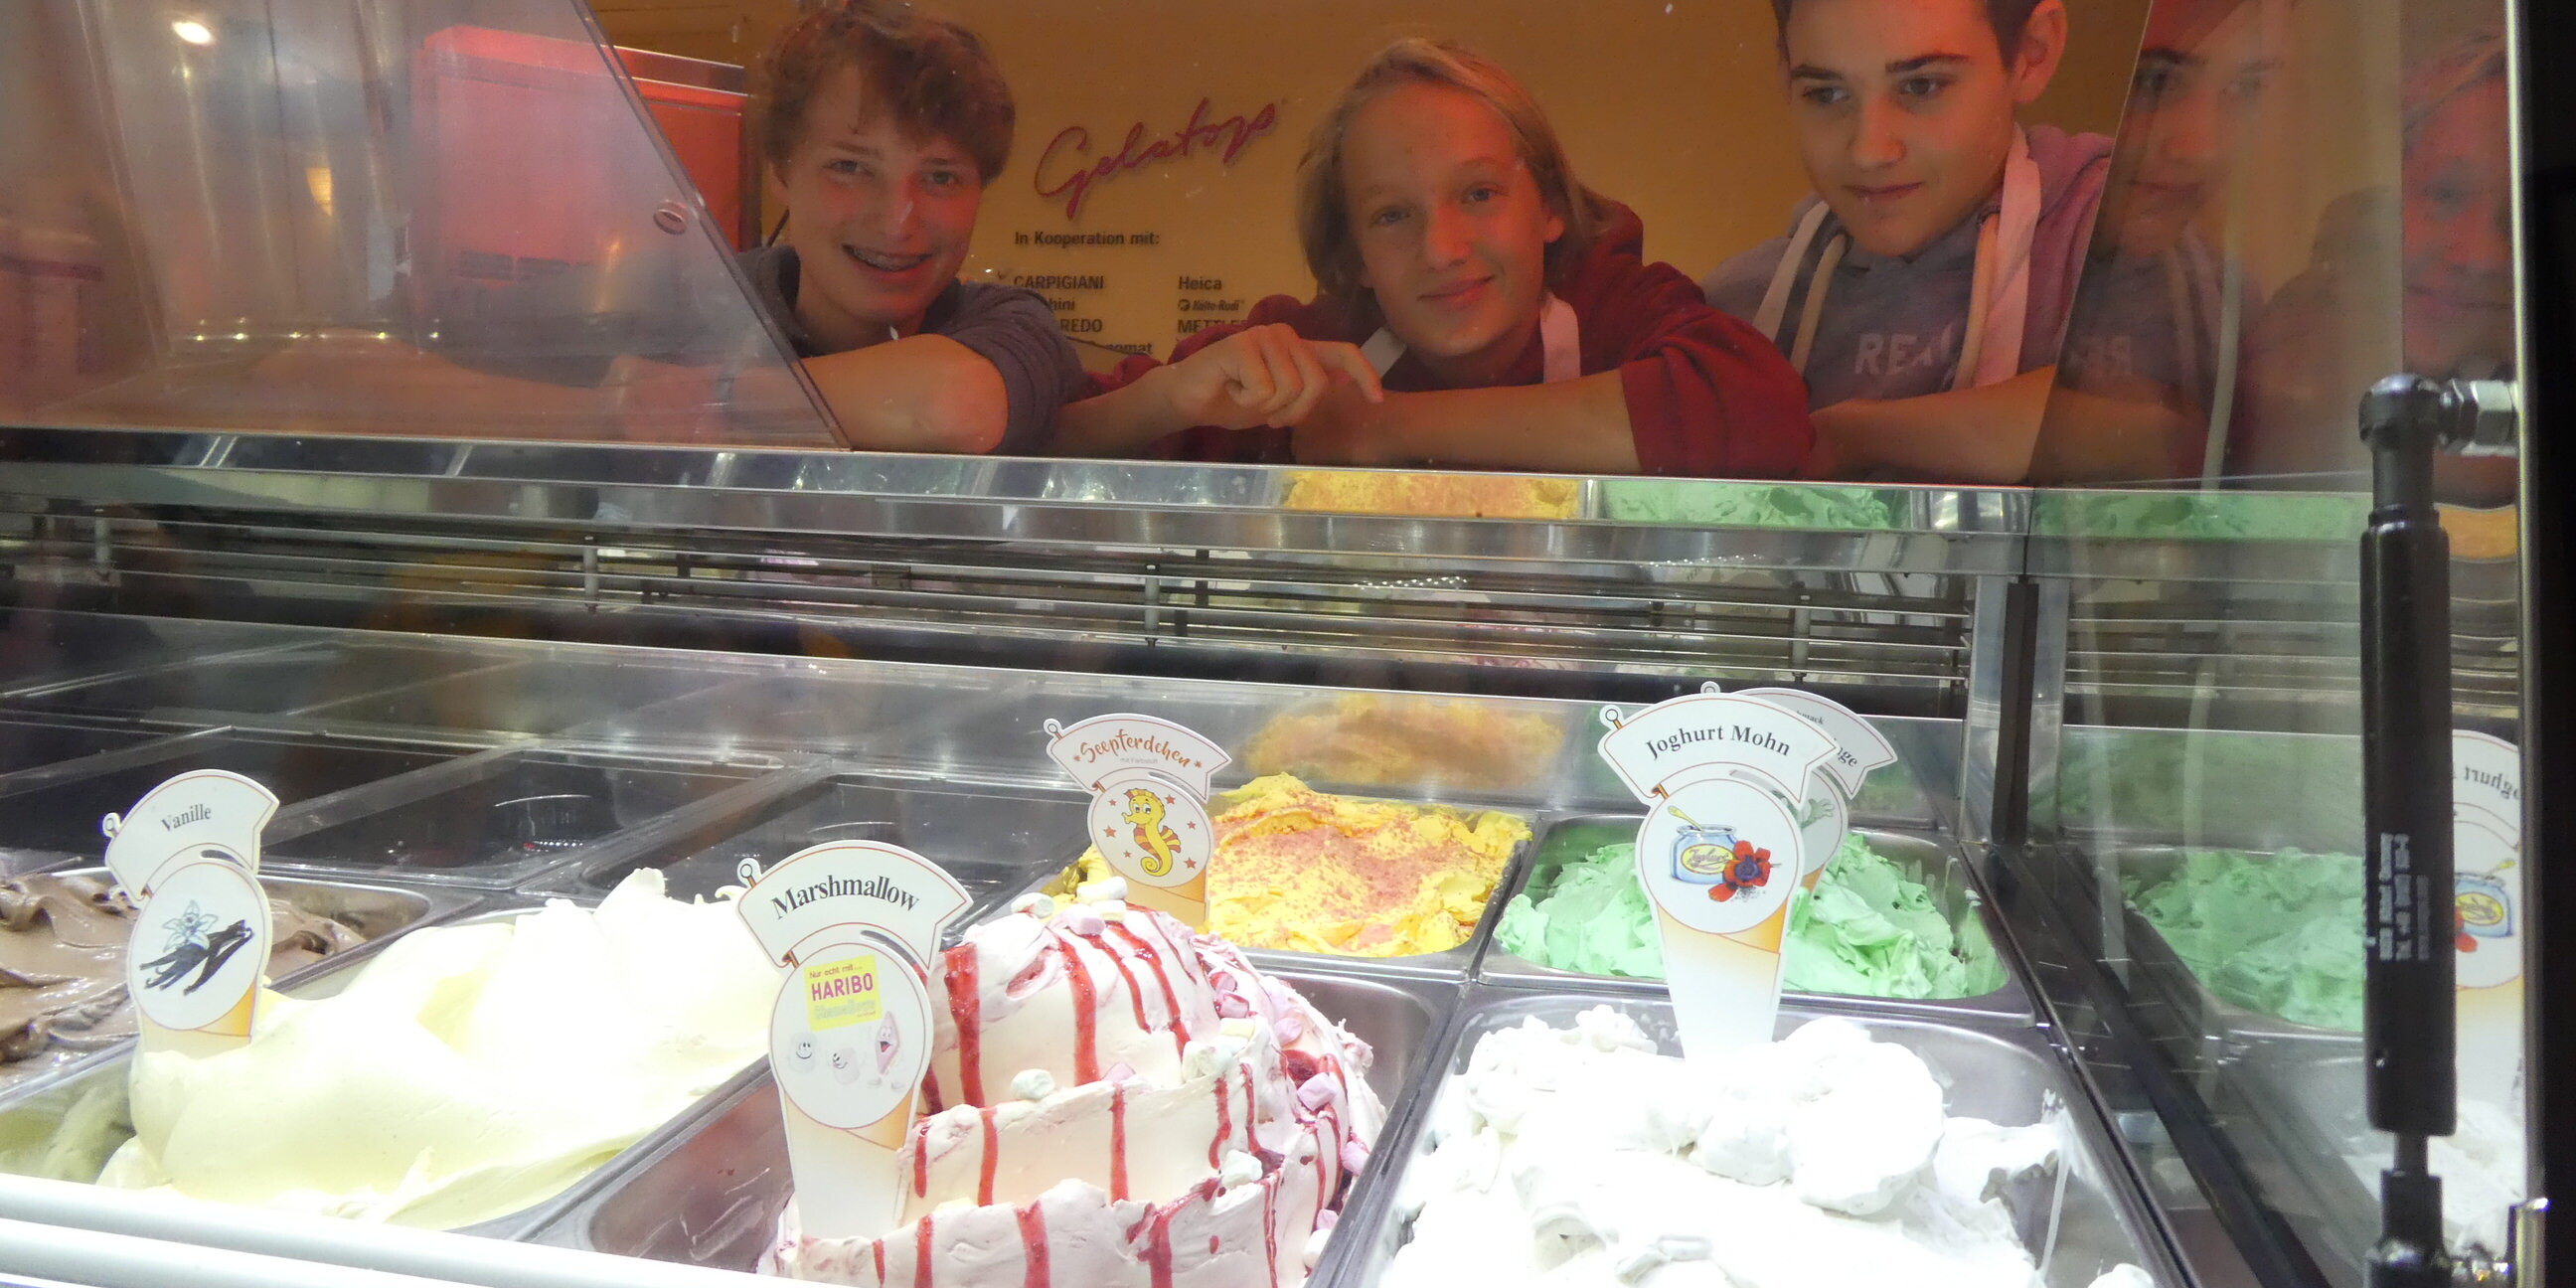 Nach der Eis-Bilanzierung freuen sich Luca, Luuk und Jannis darauf, gleich das selbstgemachte Eis zu probieren.